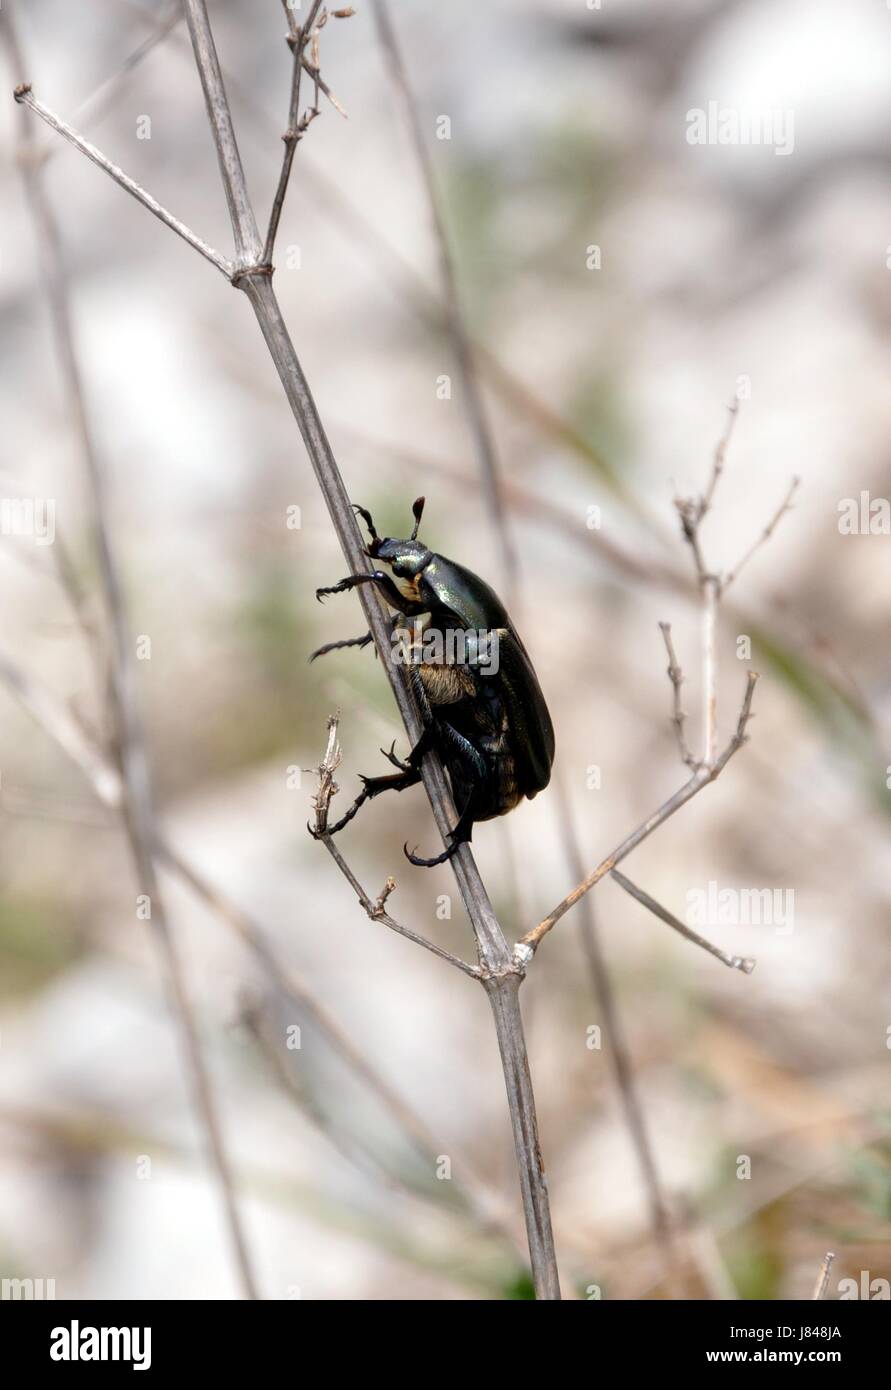 insects black swarthy jetblack deep black beetle riesenkfer riesenkfer pentodon Stock Photo